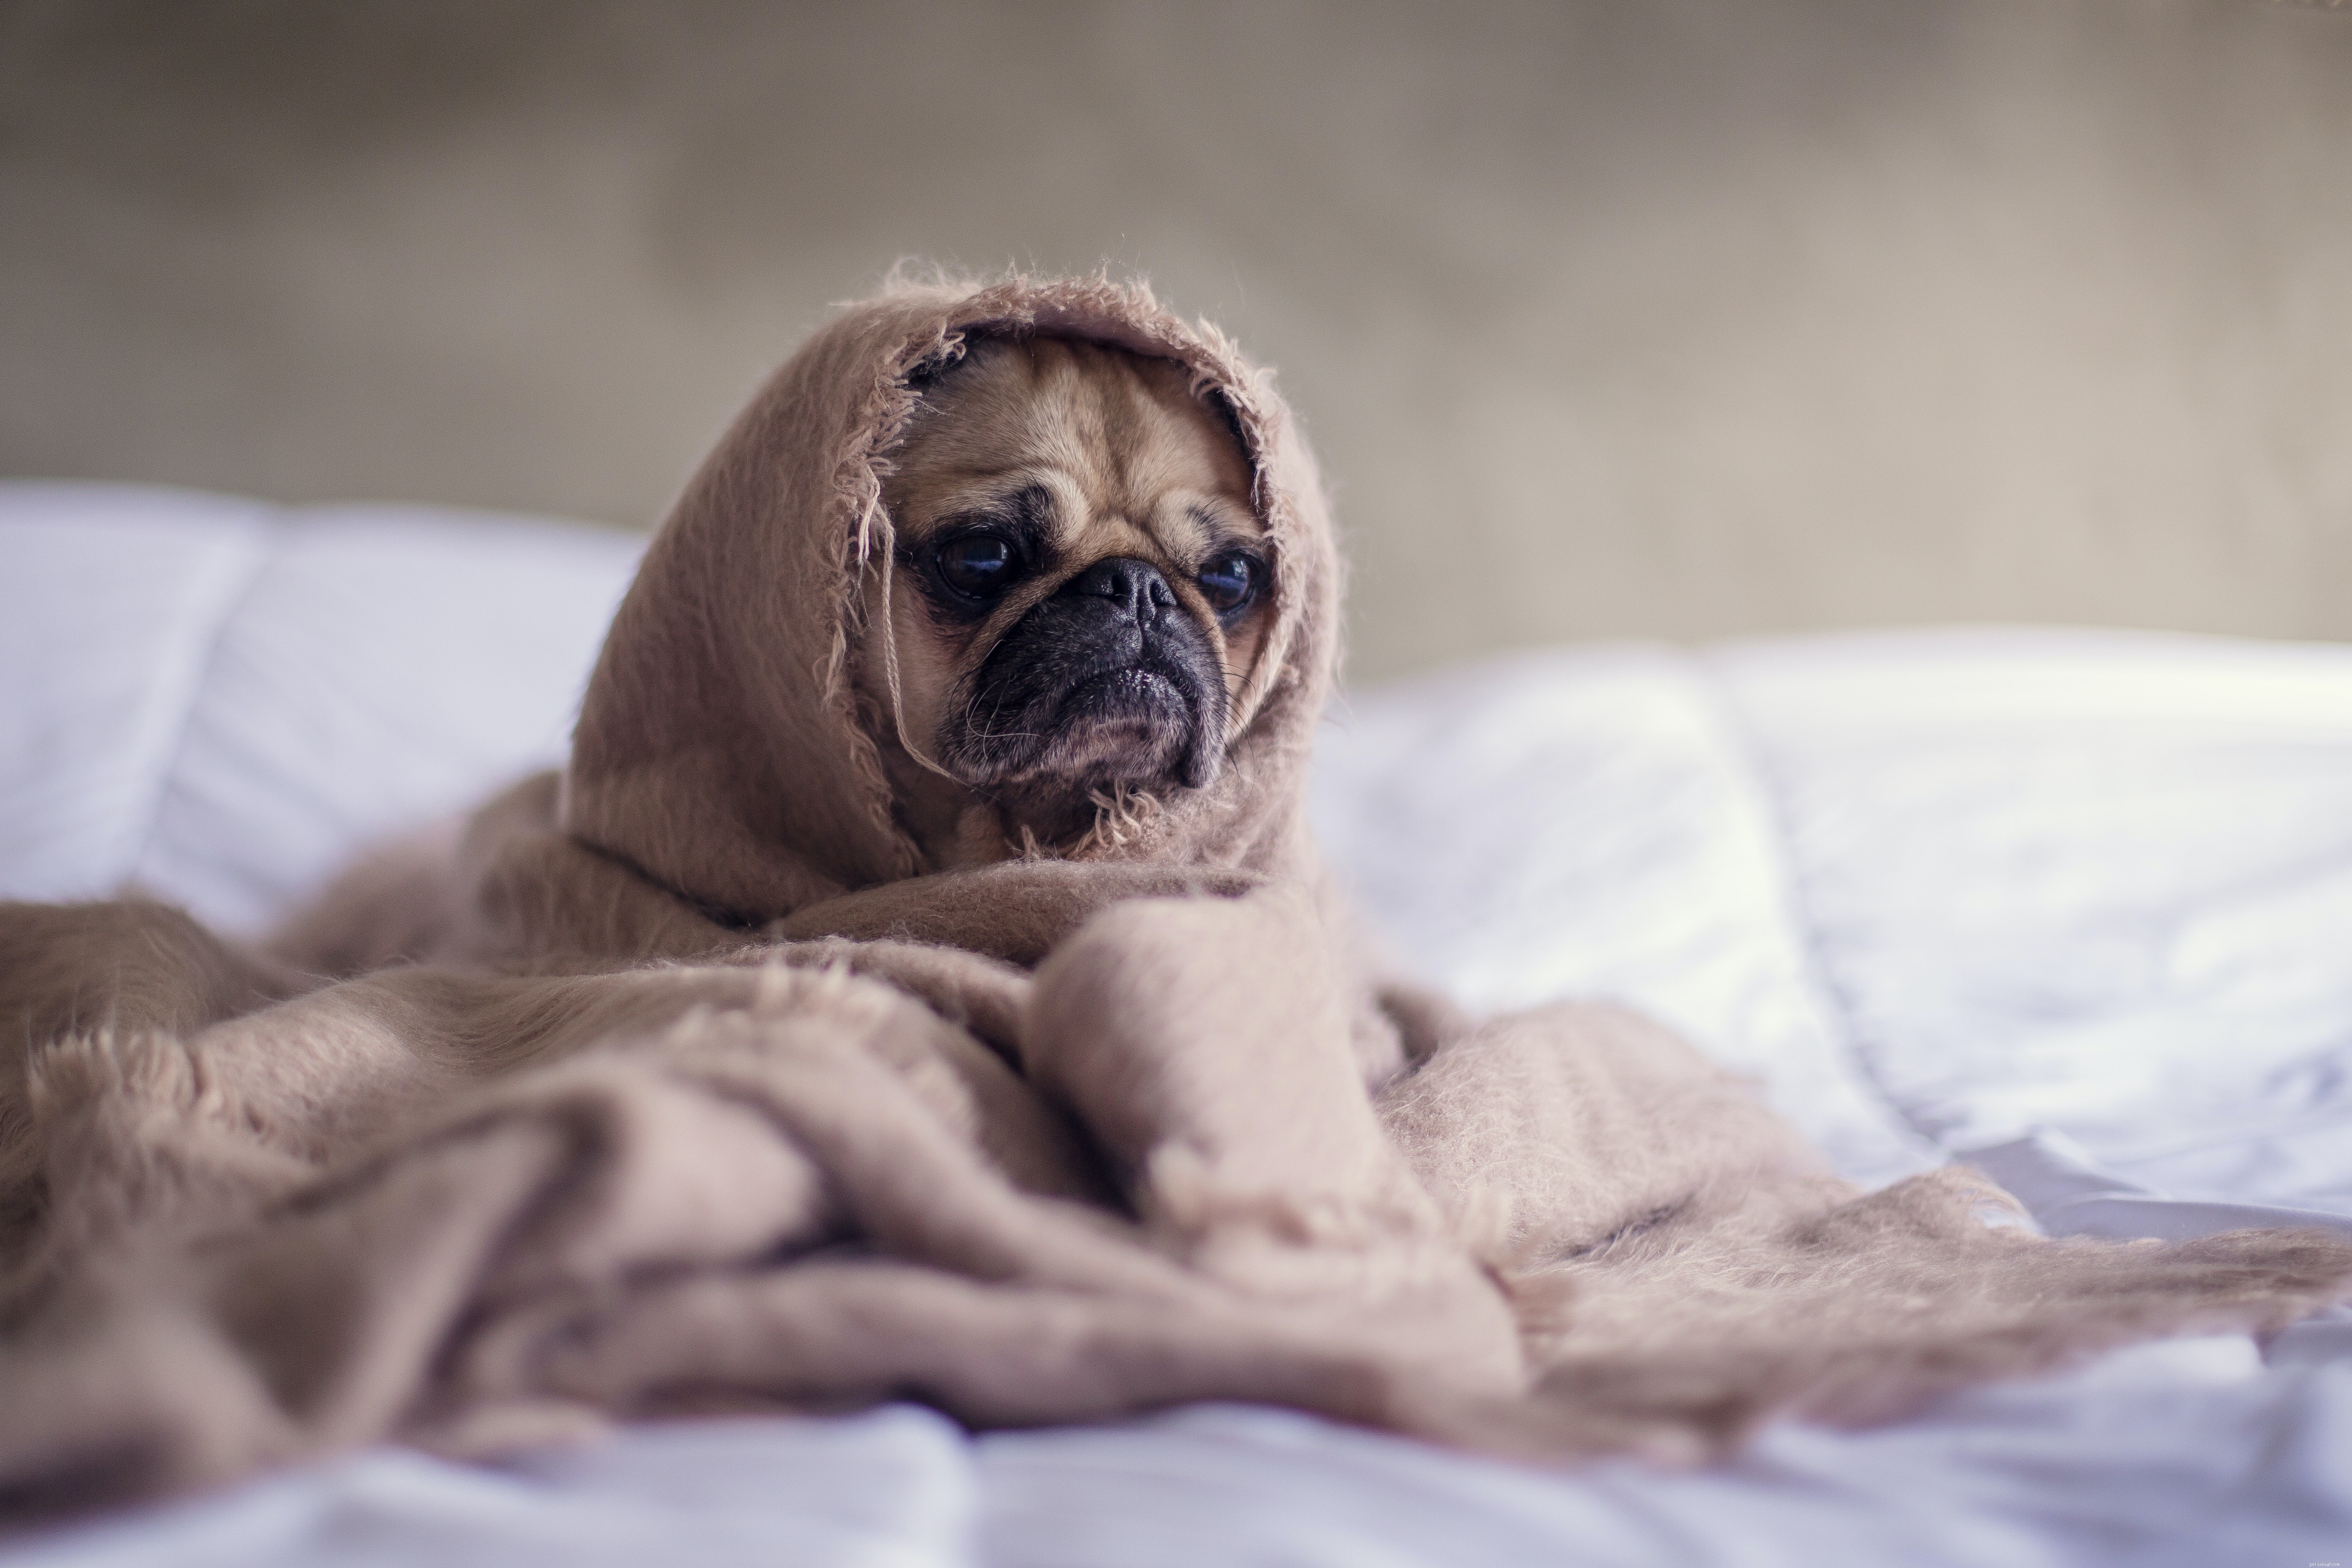 개에게 흔히 발생하는 겨울 질병을 예방하는 방법은 무엇입니까?